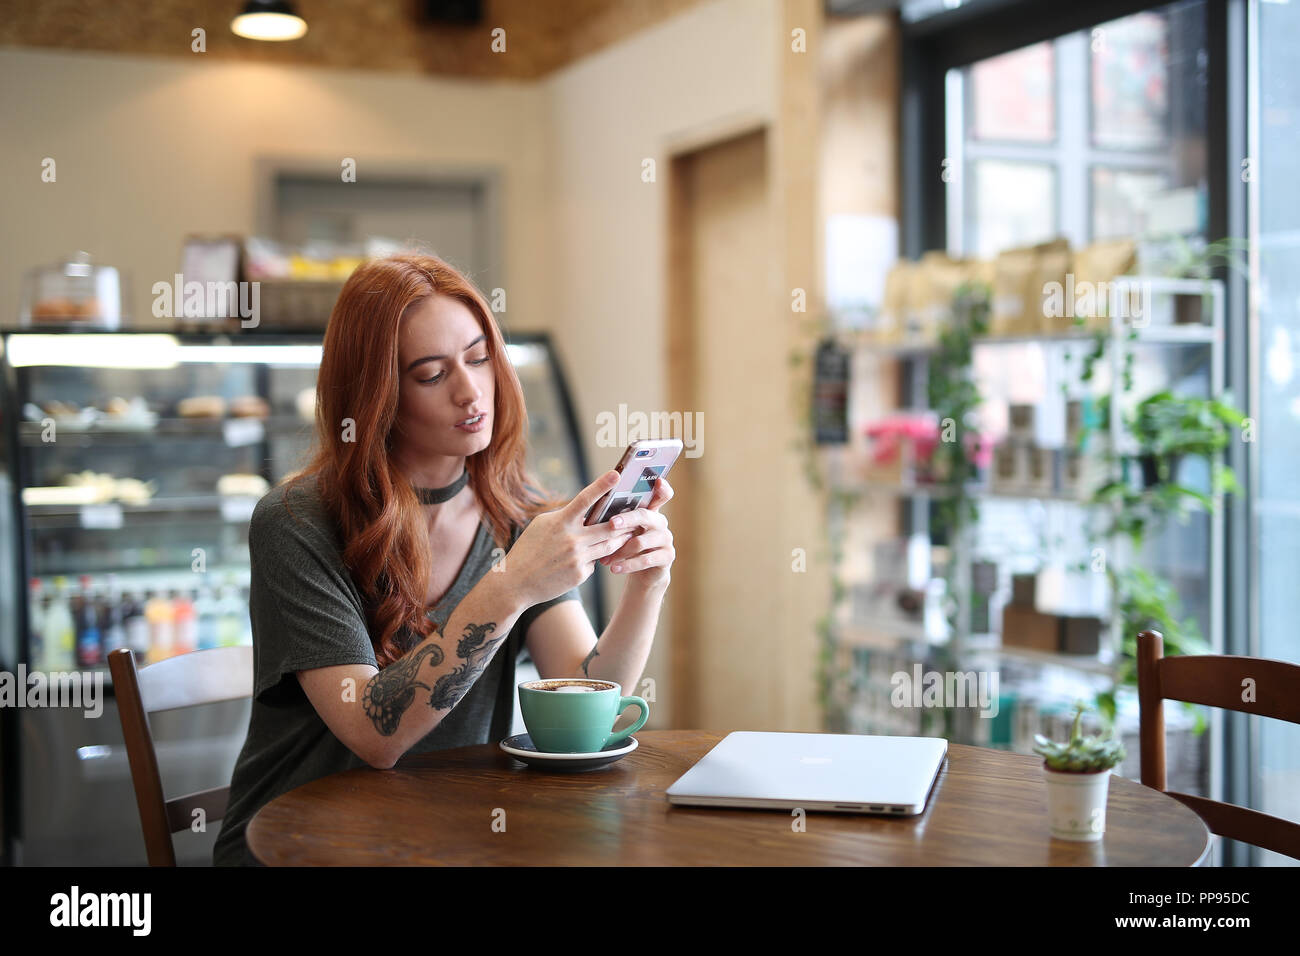 Red Head girl avec bras tatouage, assise seule dans un café en regardant son téléphone portable, avec un ordinateur portable assis sur la table en bois, Liverpool, Royaume-Uni Banque D'Images